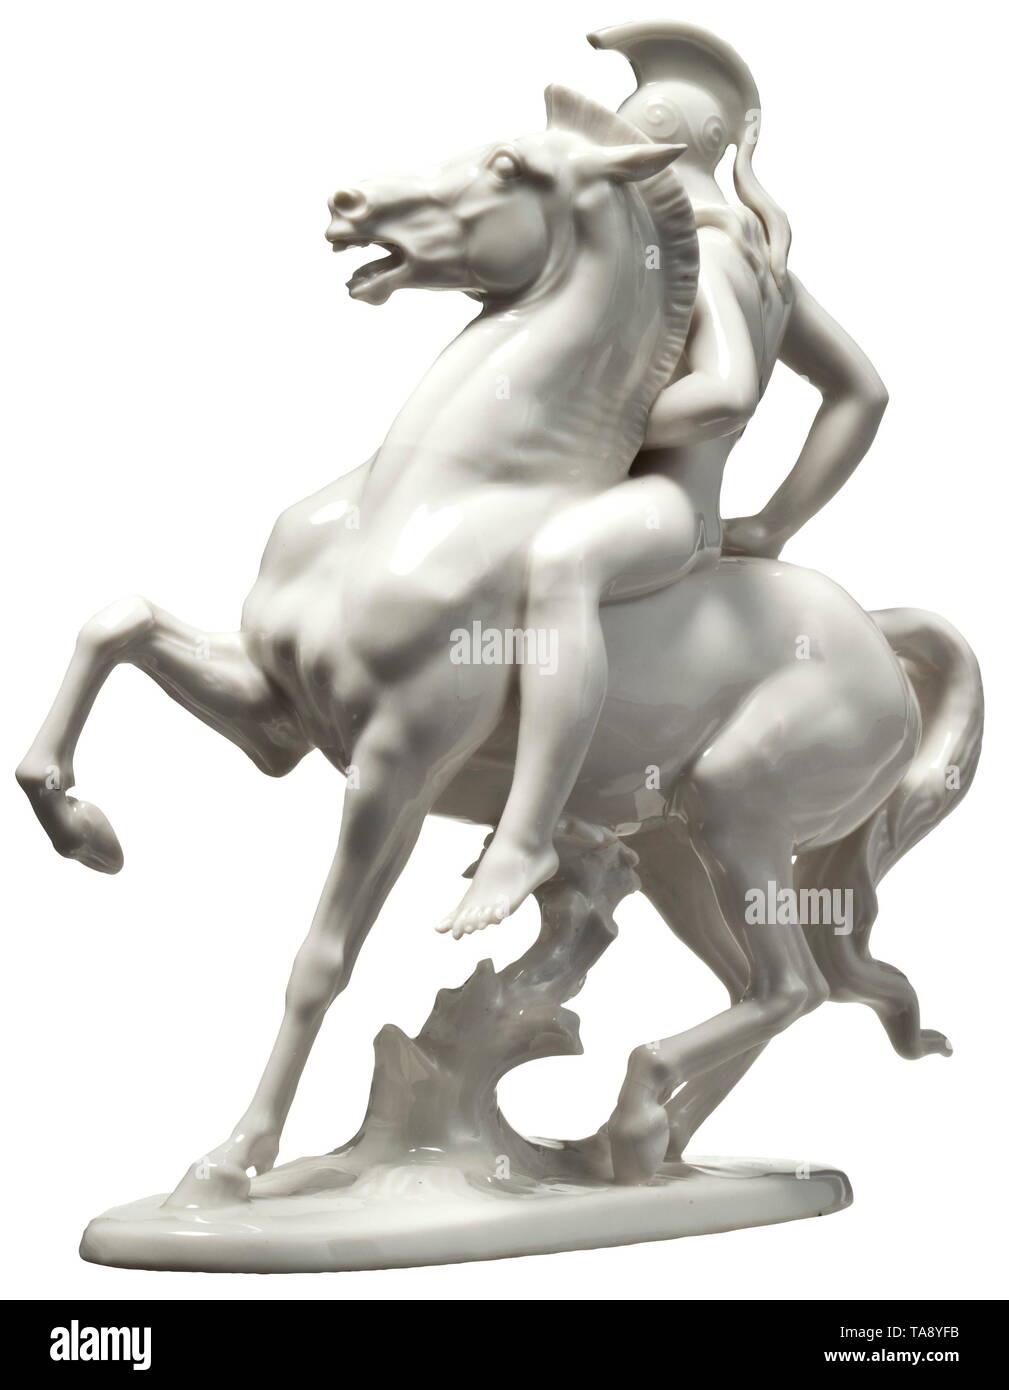 Ein Amazon warrior Allacher Porzellanmanufaktur. Weiß glasiertem Porzellan  Figur eines Amazon auf dem Pferd. Die Basis mit der Signatur des Künstlers'  T. "Kärner, Maker's Mark und Modell Nr. "82" an der Basis.